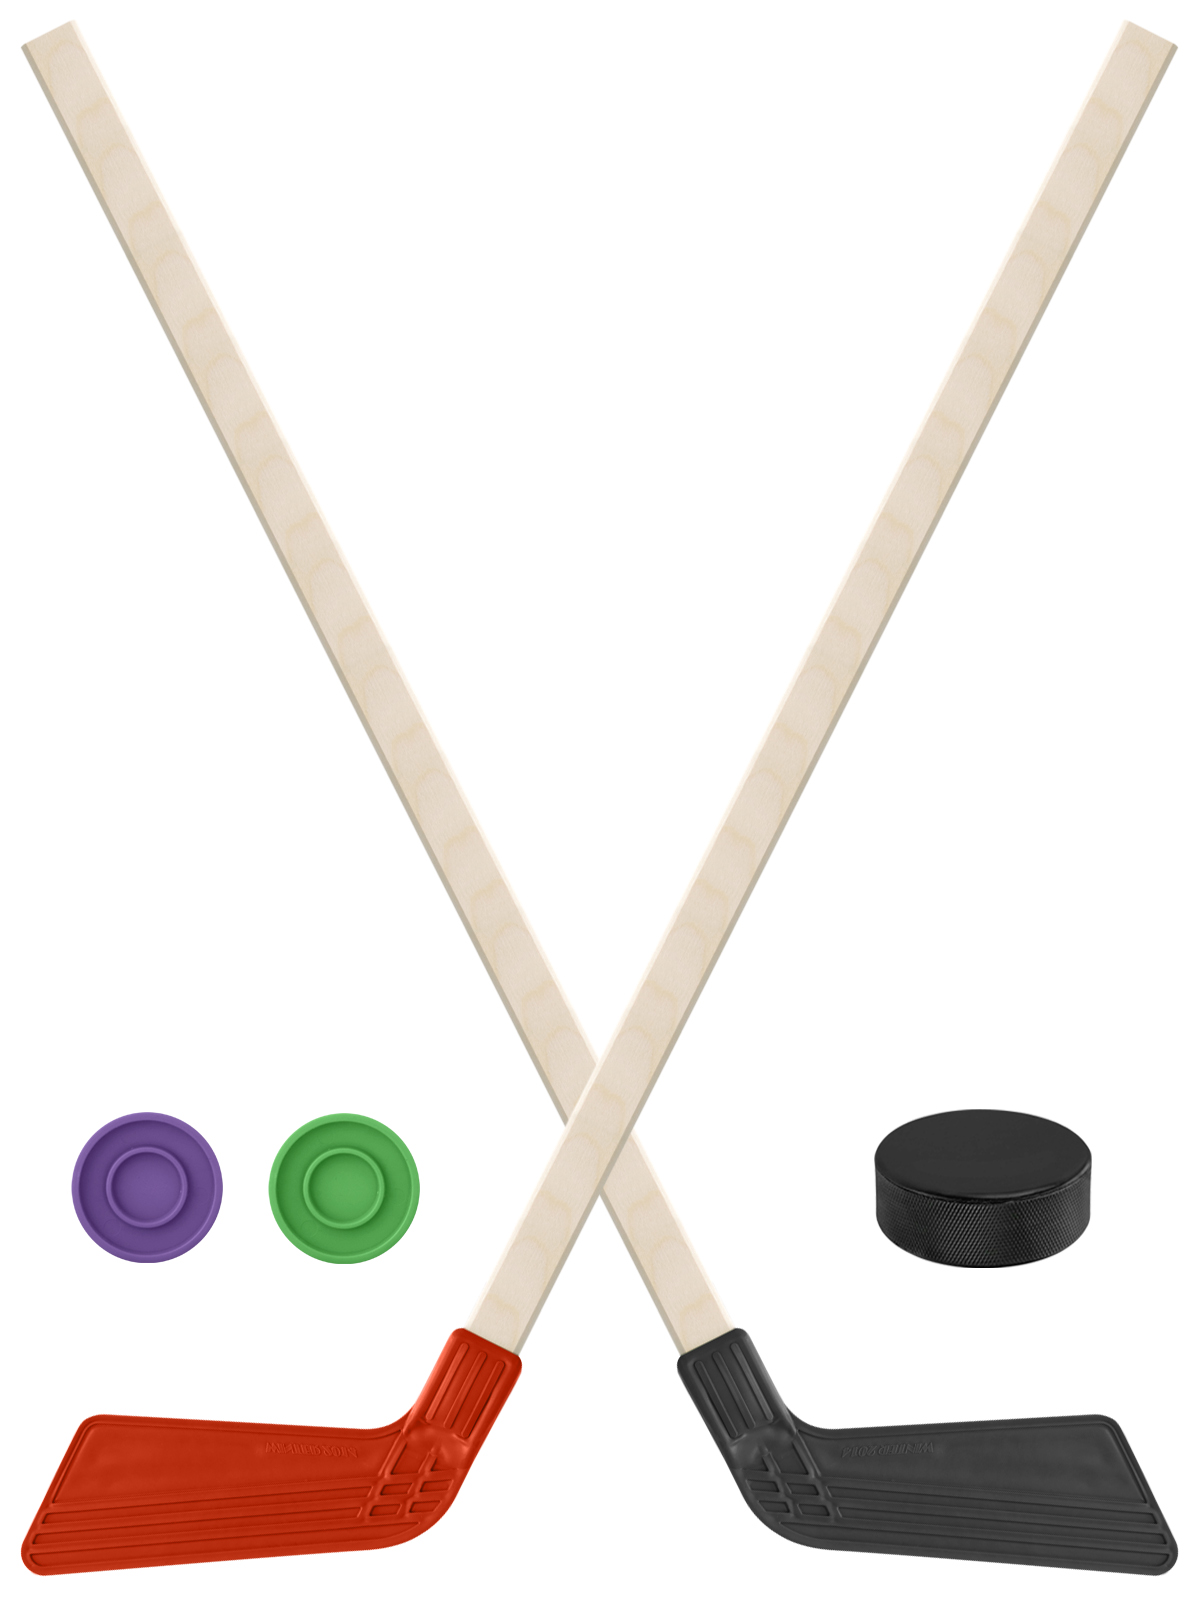 Детский хоккейный набор Задира-плюс  Клюшка хоккейная 2шт(красн,чёрн)+2 шайбы+Шайба 75 мм детский хоккейный набор задира плюс 3 в 1 клюшка хоккейная 80см жёл черн син 3 шайбы